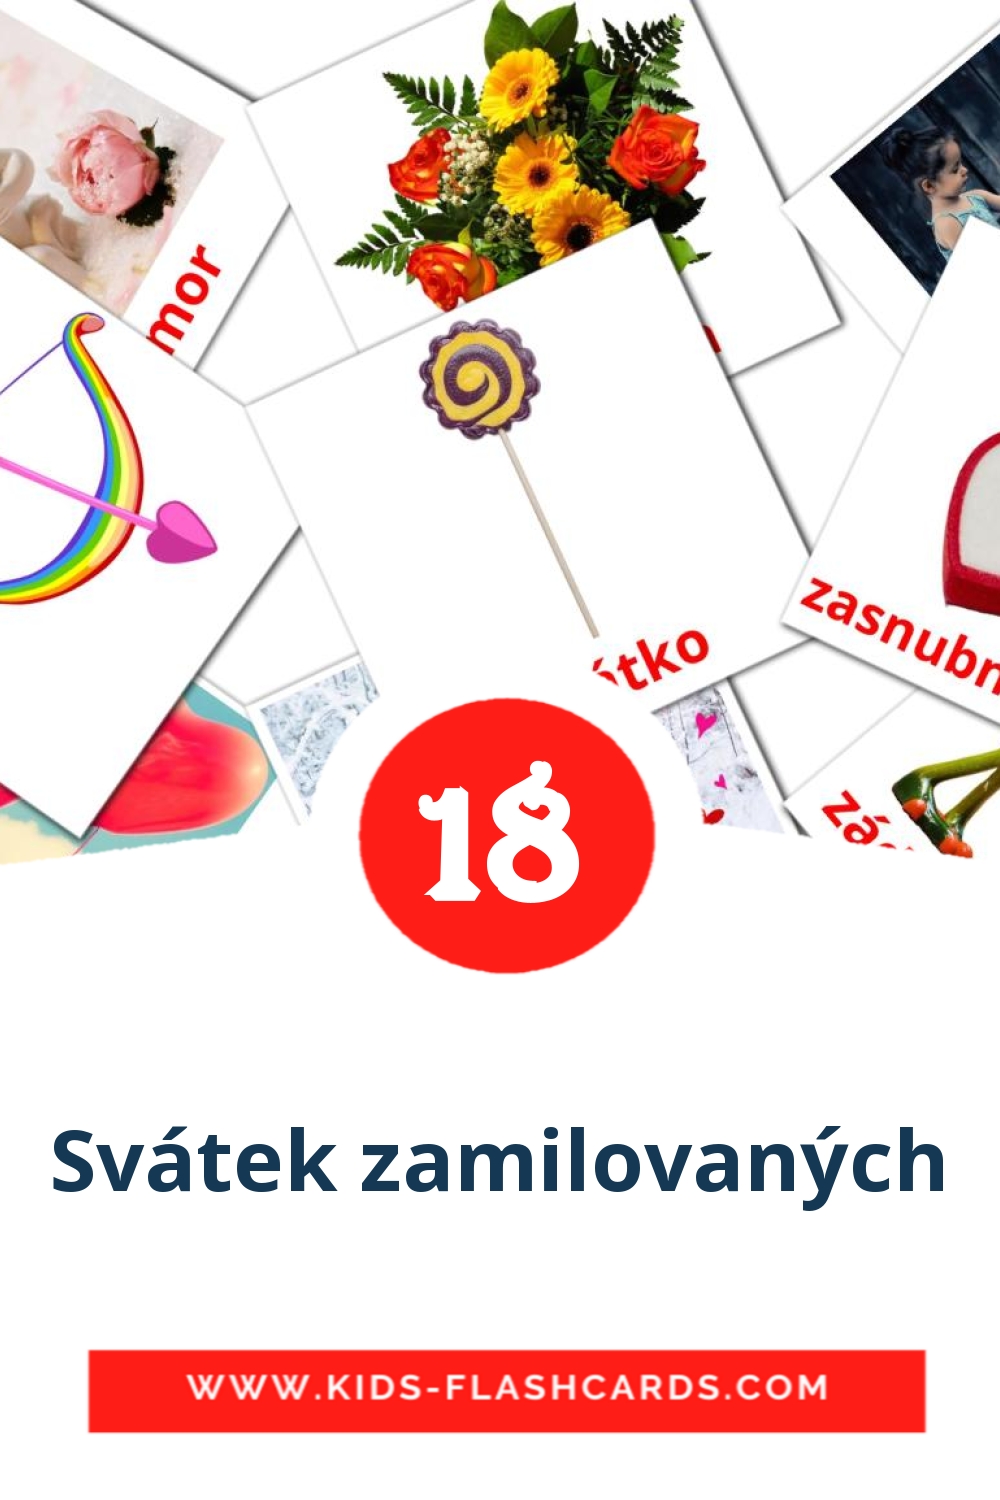 18 Svátek zamilovaných fotokaarten voor kleuters in het tsjechisch